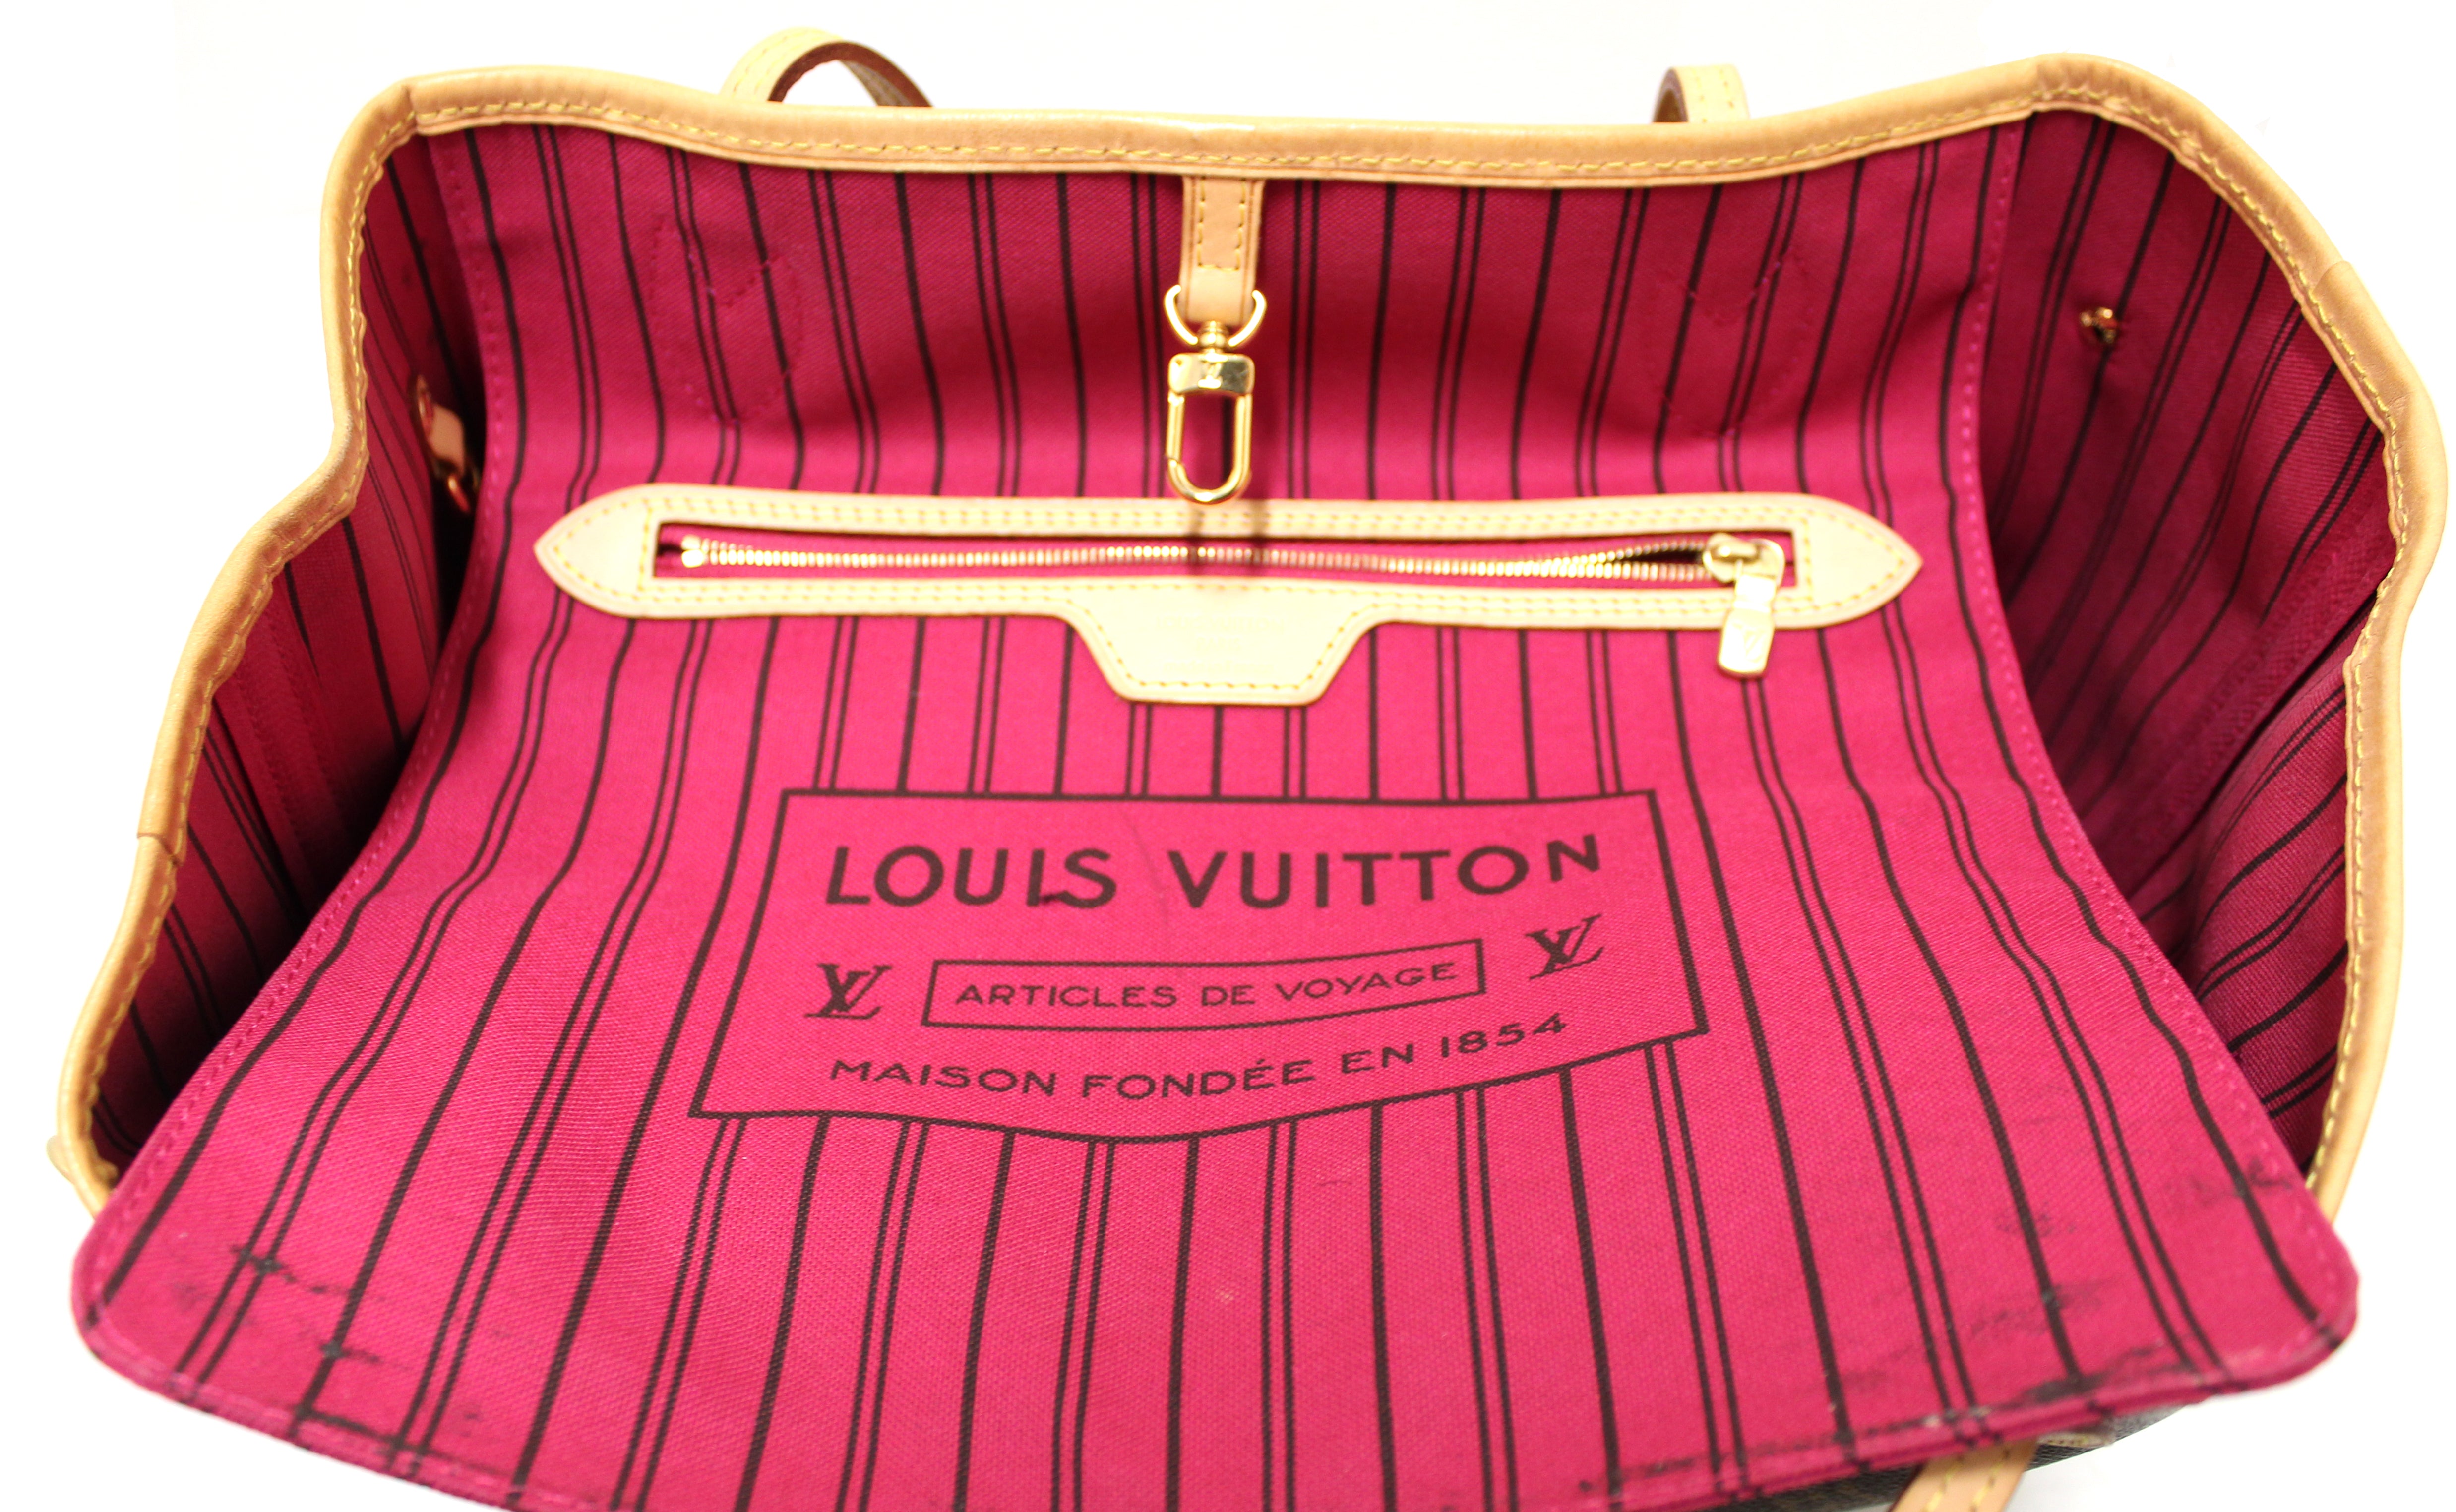 Louis Vuitton Louis Vuitton articles de voyage maison fondee en 1854